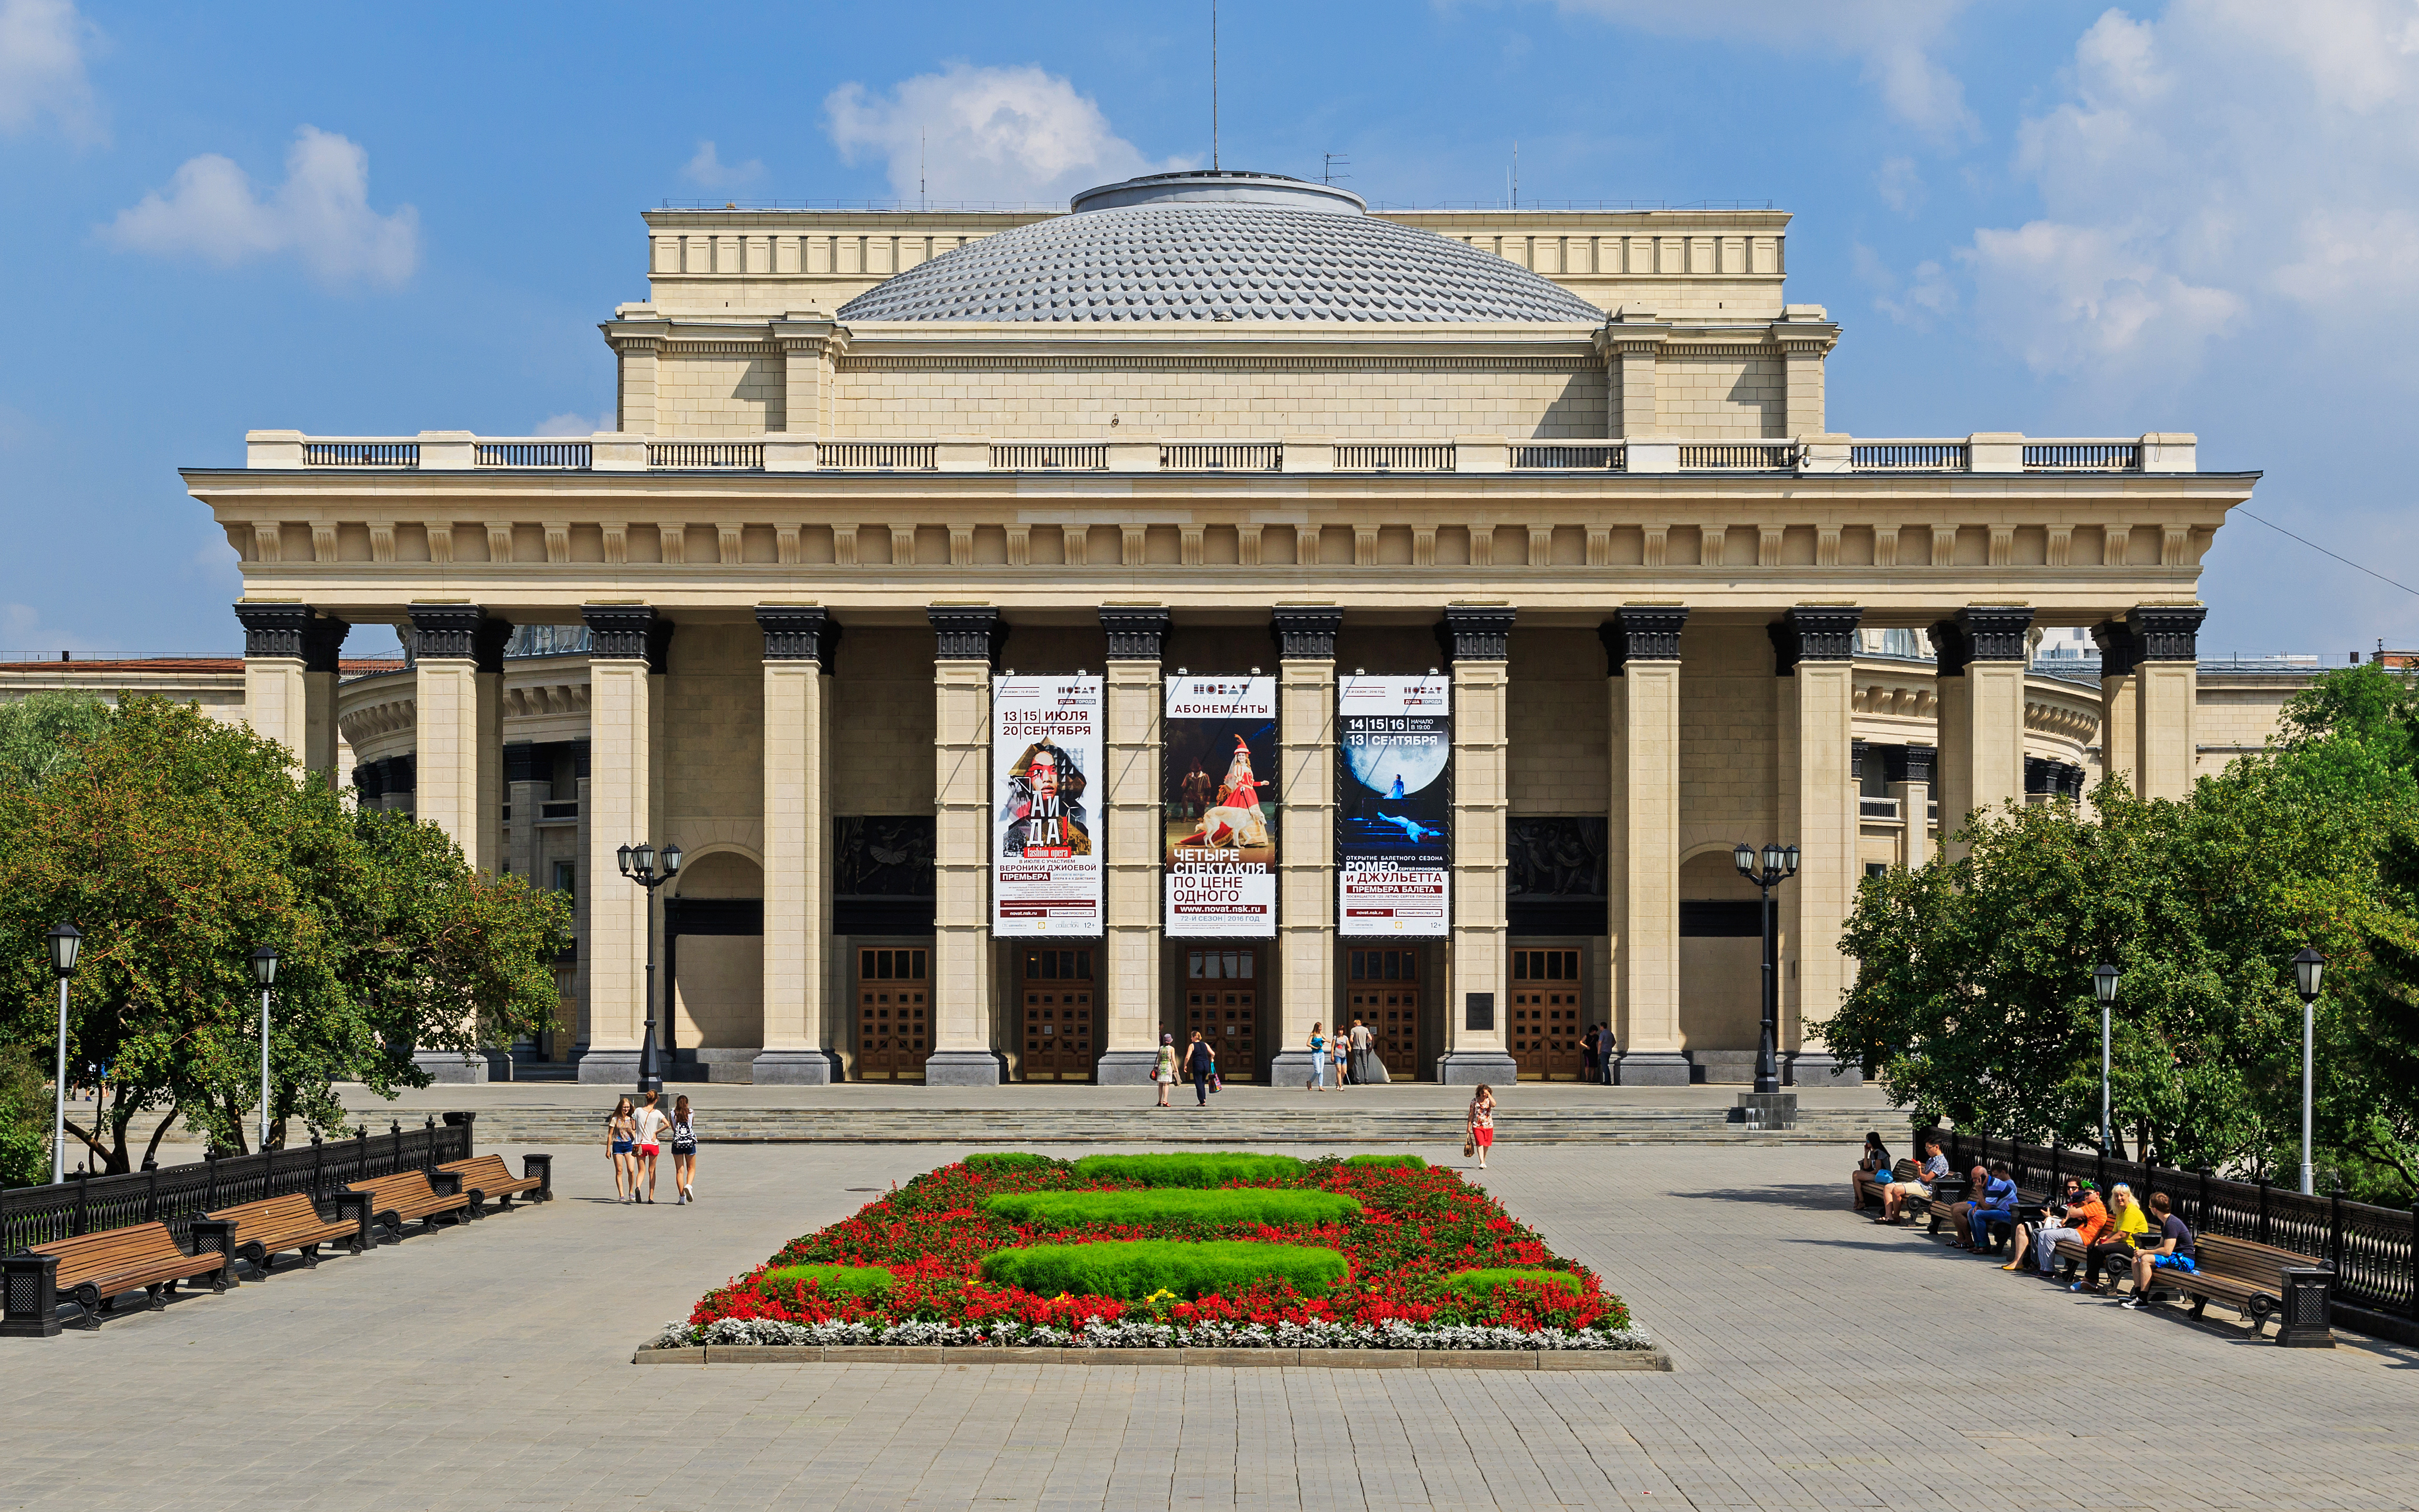 Однією з культурних пам'яток   Новосибірська   є театри міста, серед яких найбільш відомим є   Театр опери та балету   (Найбільше в Росії театральну будівлю), що став одним із символів Новосибірська